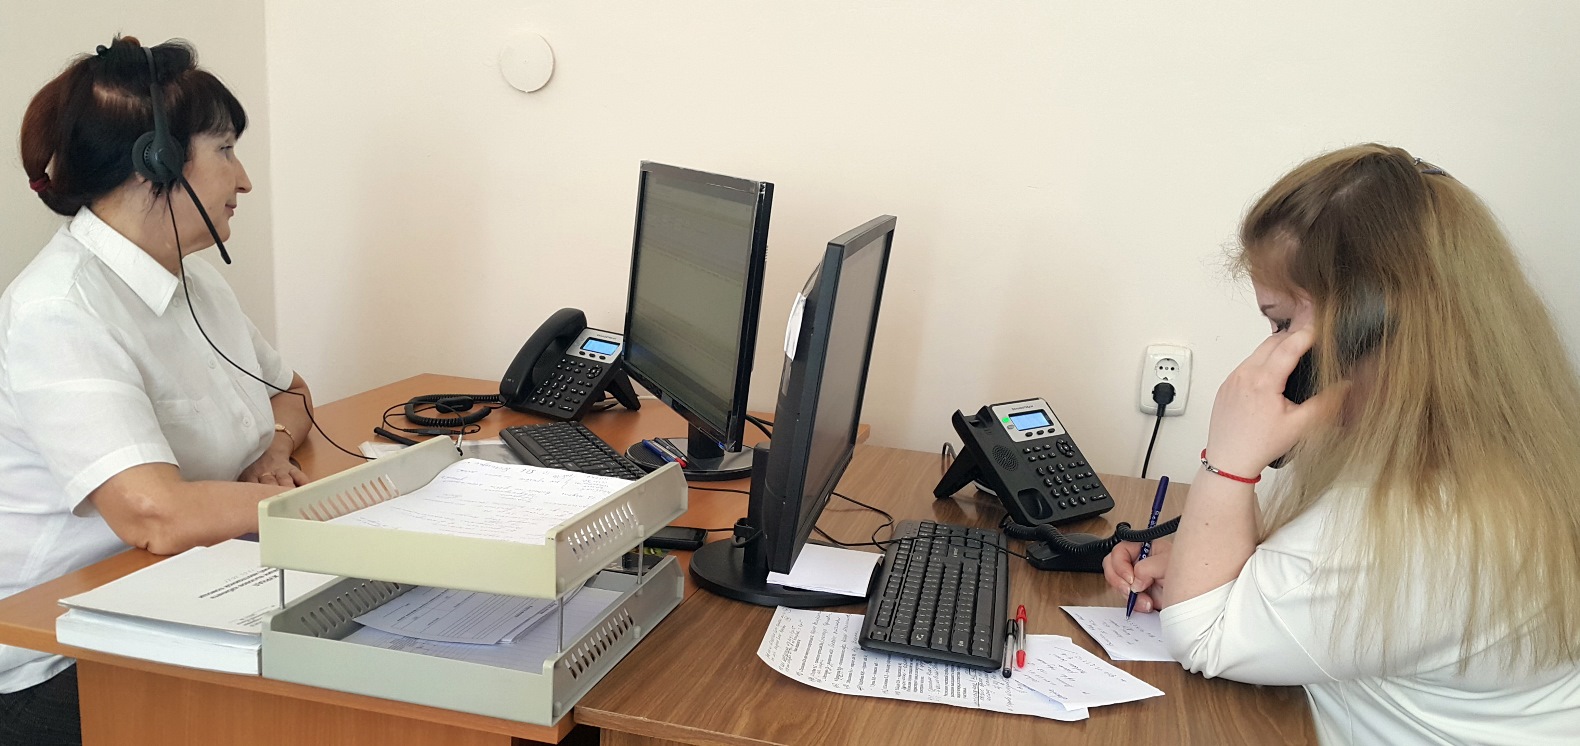 Единый номер телефона для объединённого call-центра поликлиник создан в Серовской городской больнице